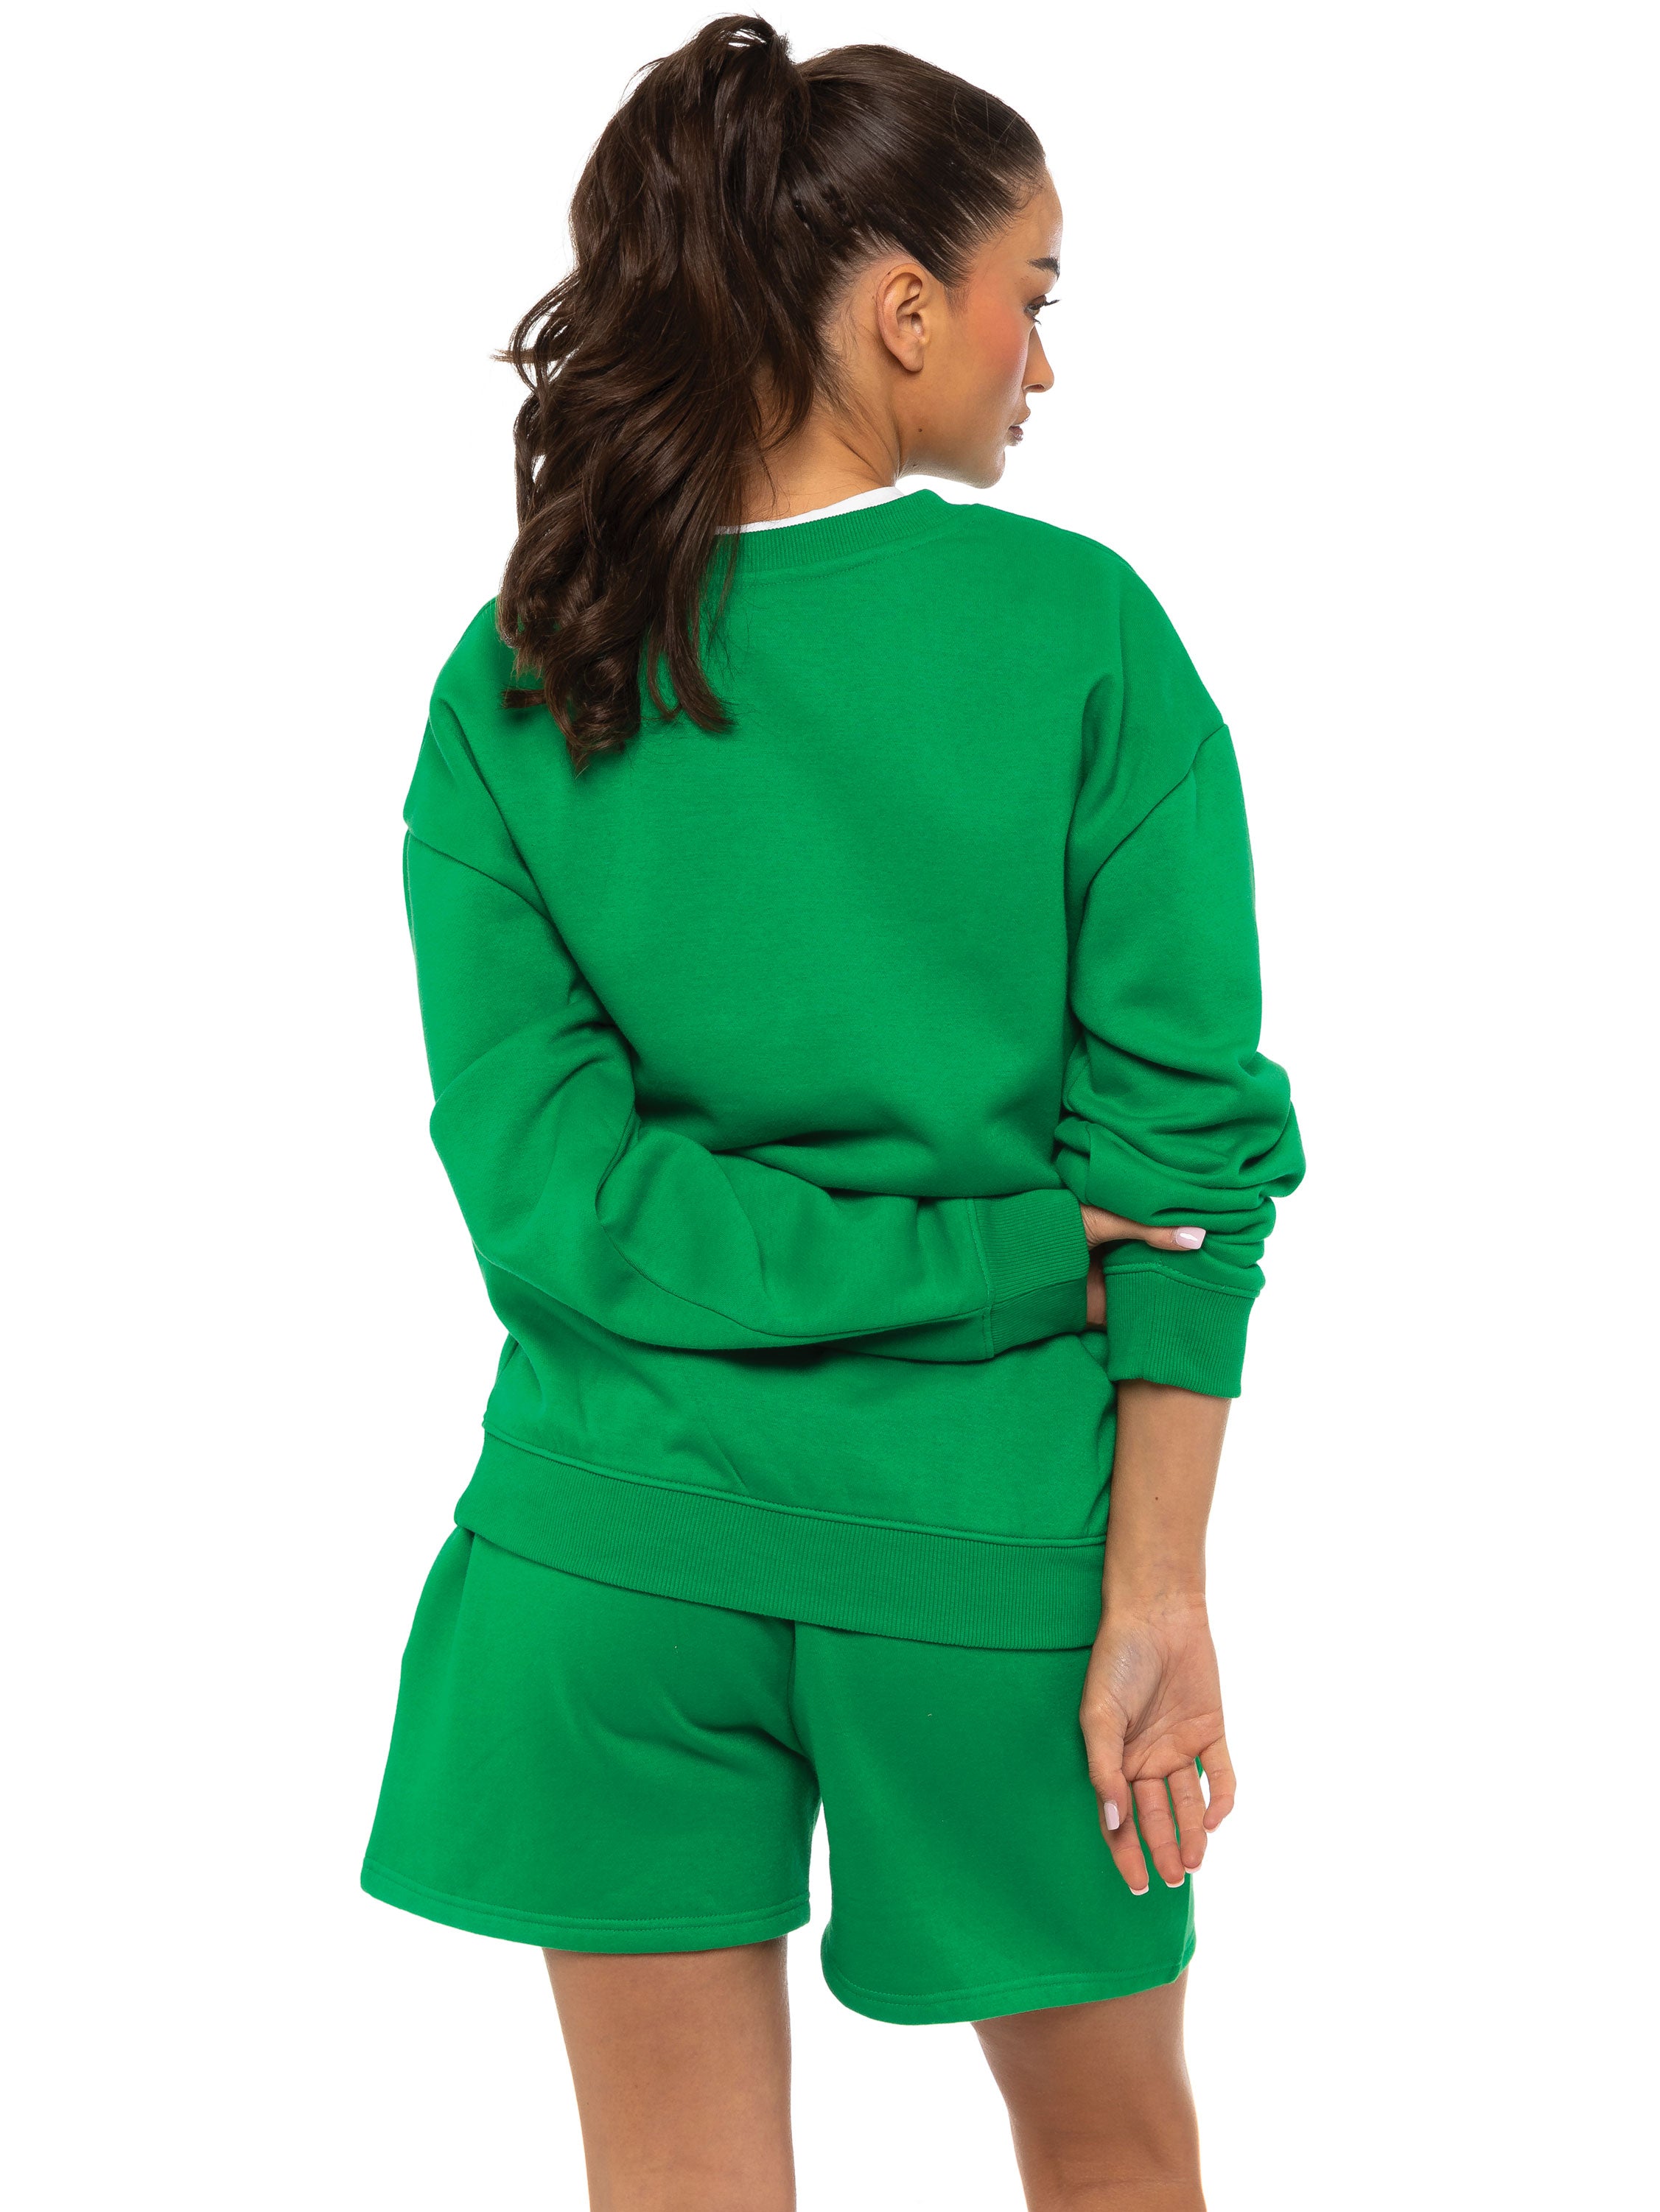 Legwear Fashion on X: Green sweater, army green shorts and